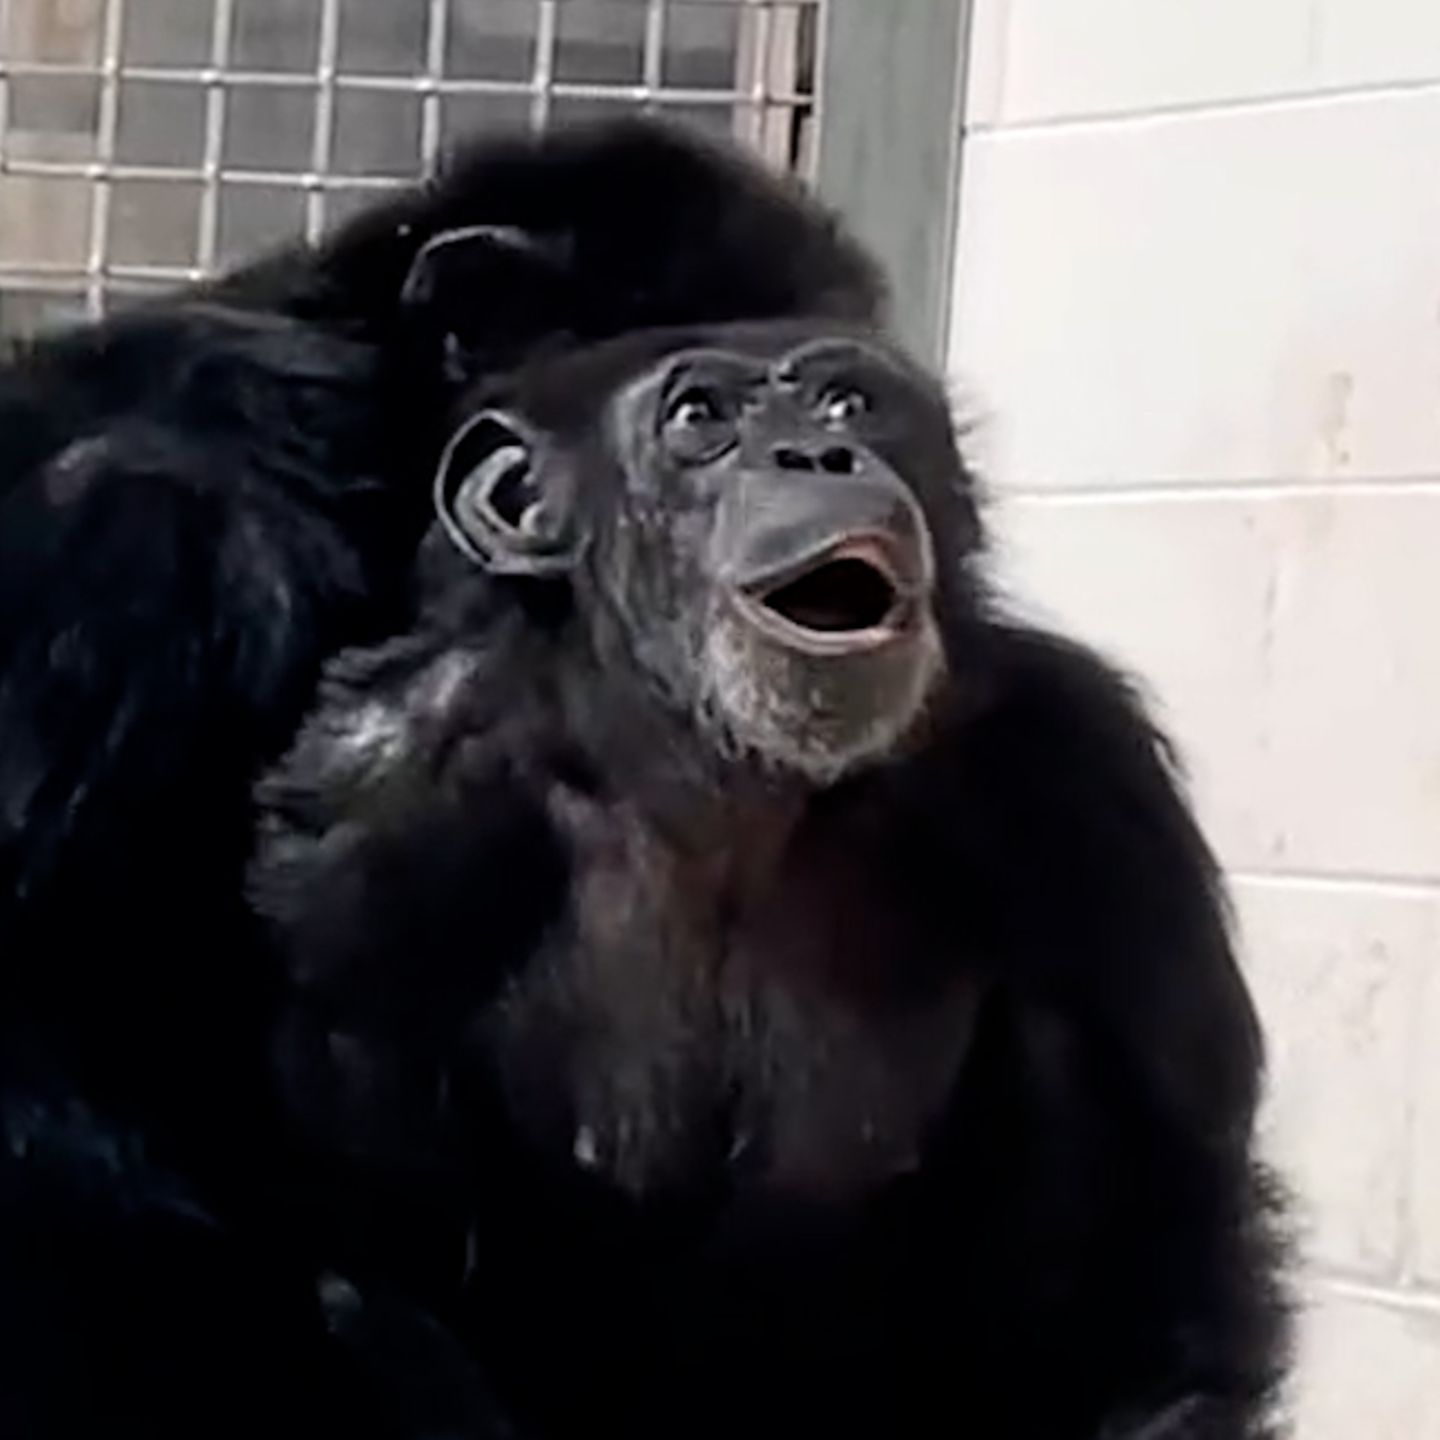 Schimpansin sieht nach 28 Jahren zum ersten Mal den Himmel